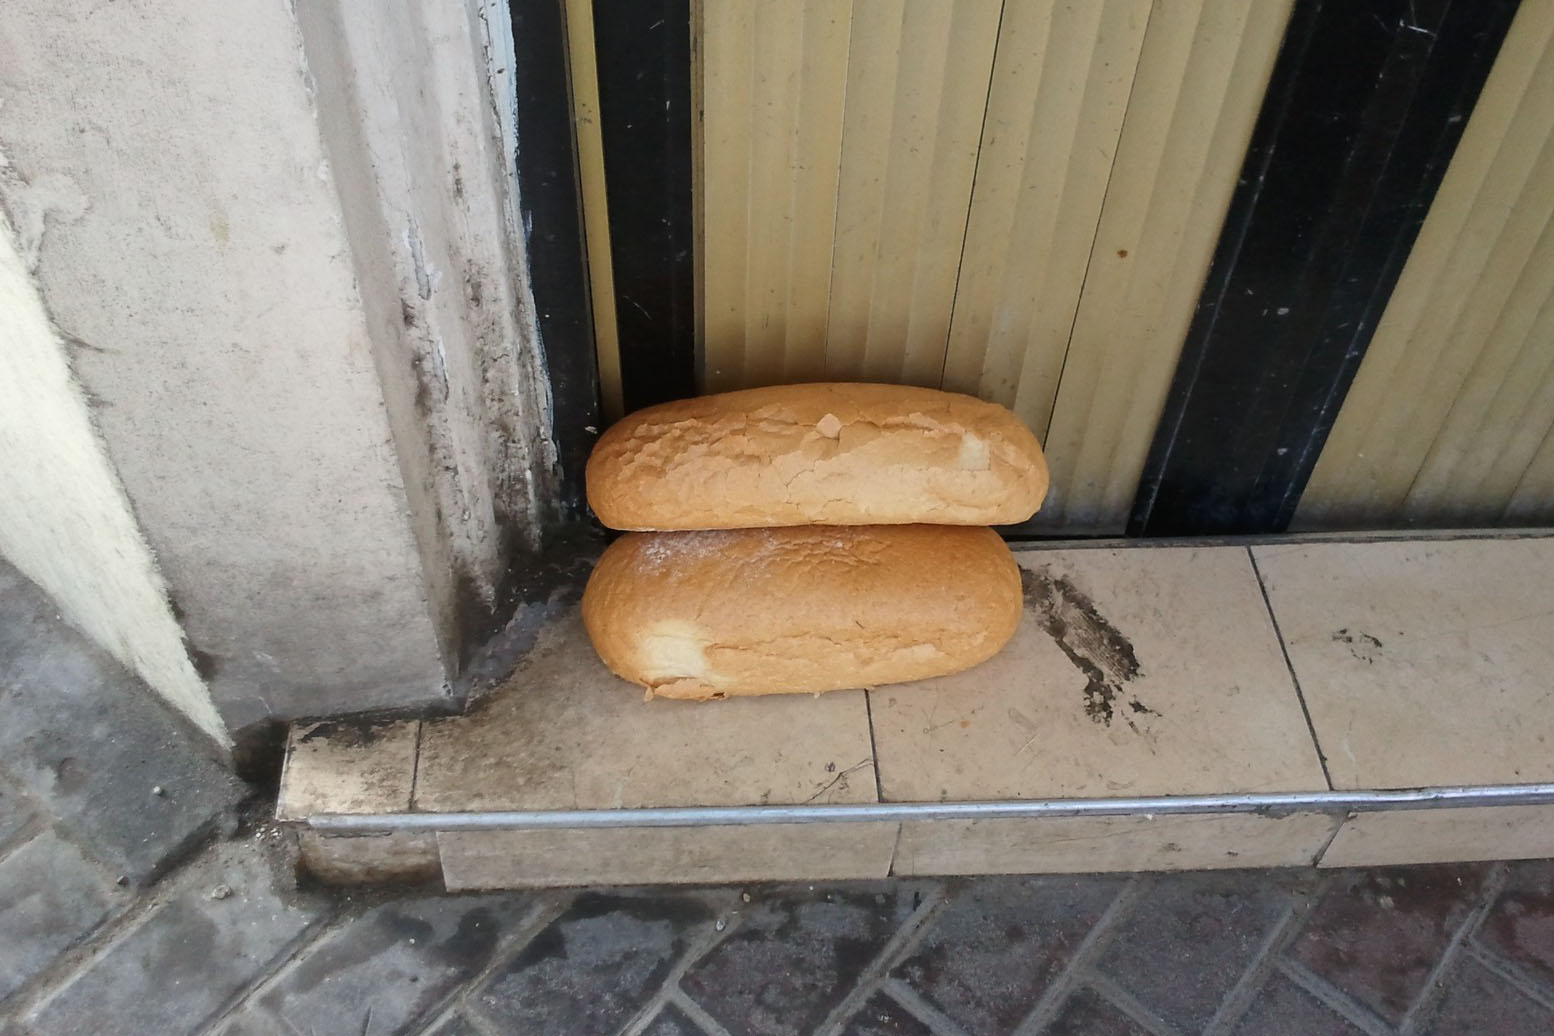 שתי כיכרות לחם ברחוב בתל אביב. מעל 780 אלף איש, דיווחו שצימצמו את כמות האוכל שצרכו במהלך חודש מאי (צילום: דבר)